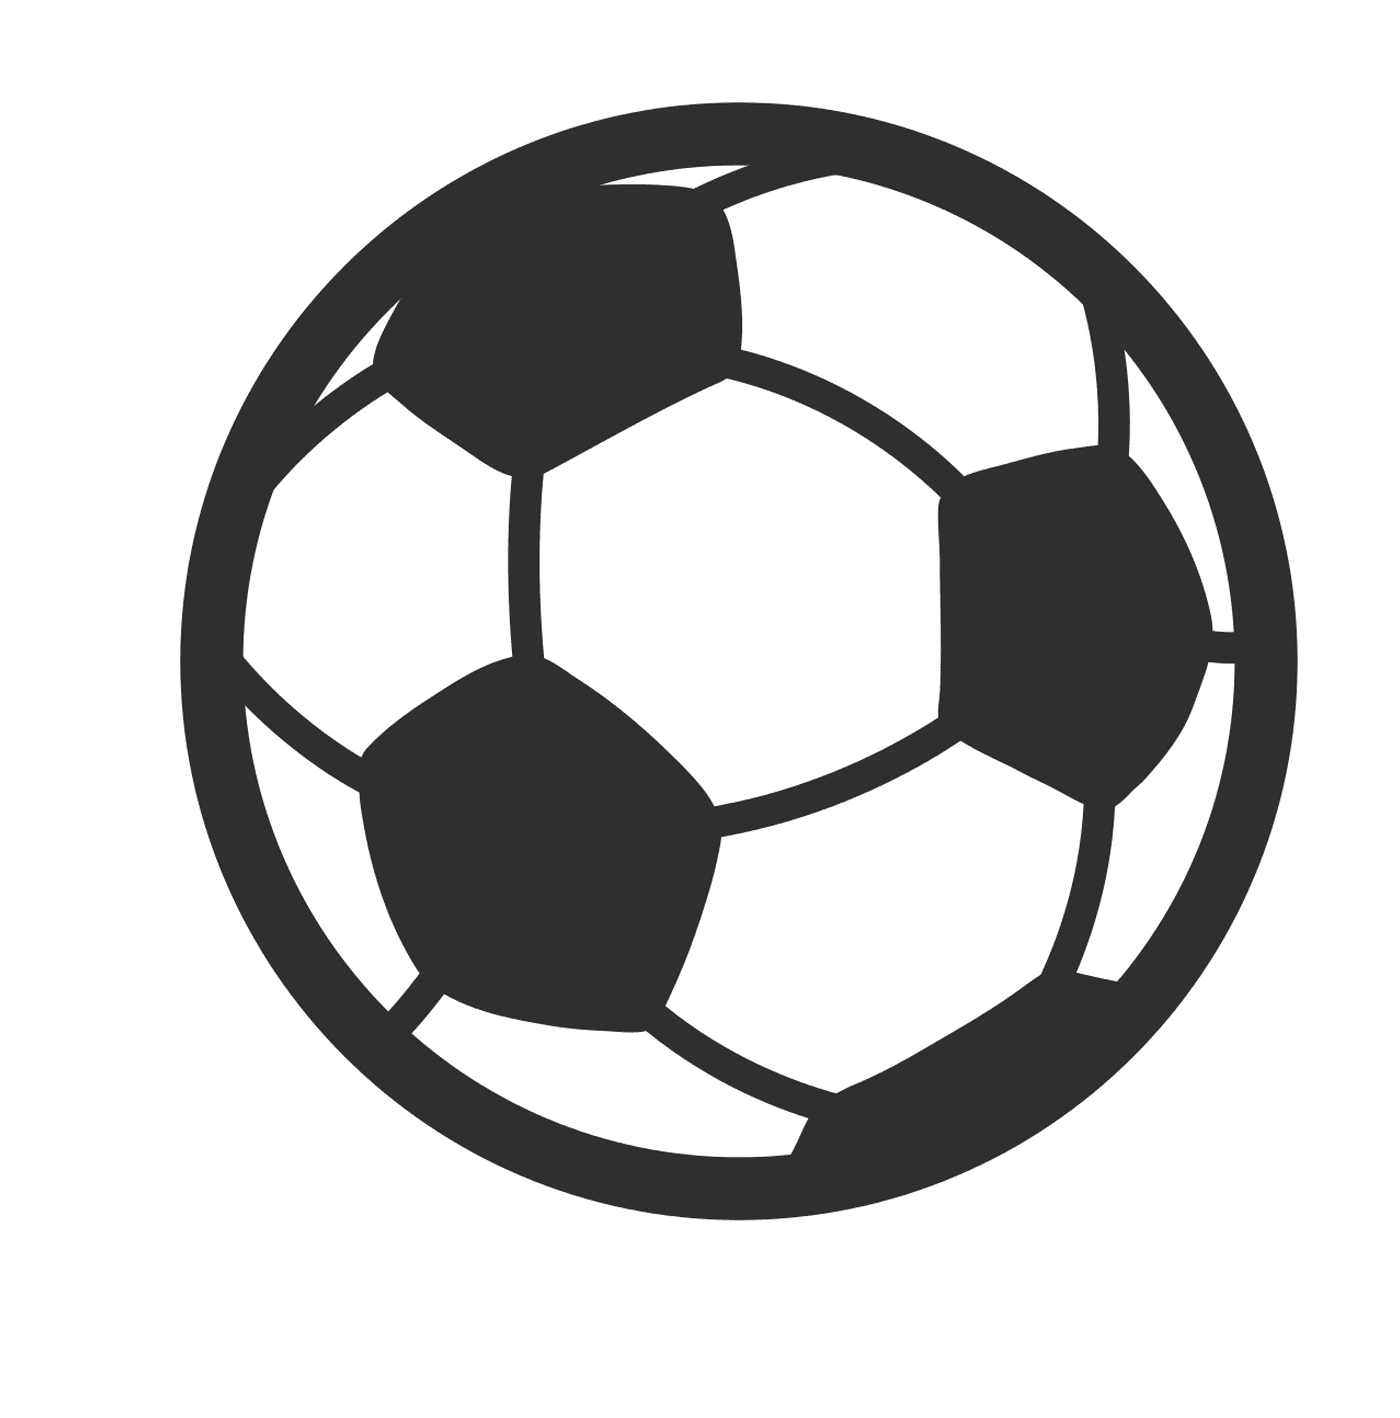   Un ballon de soccer 